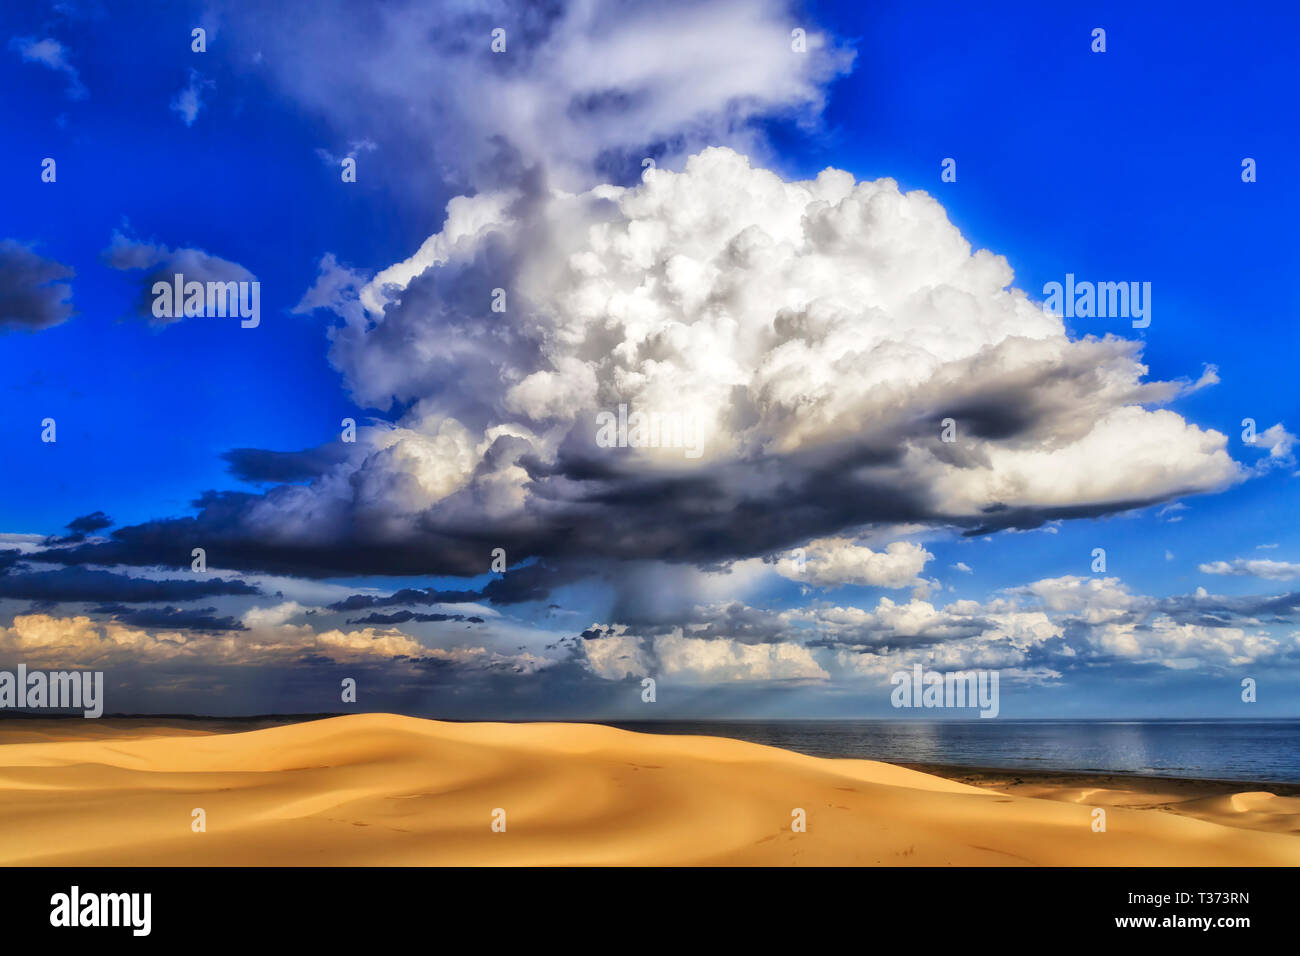 En forme de tortue comme nuage de pluie orageuse sur dunes de sable sur la côte pacifique de l'Australie dans le ciel bleu laissant tomber la pluie à aride déserté Stockton Beach. Banque D'Images